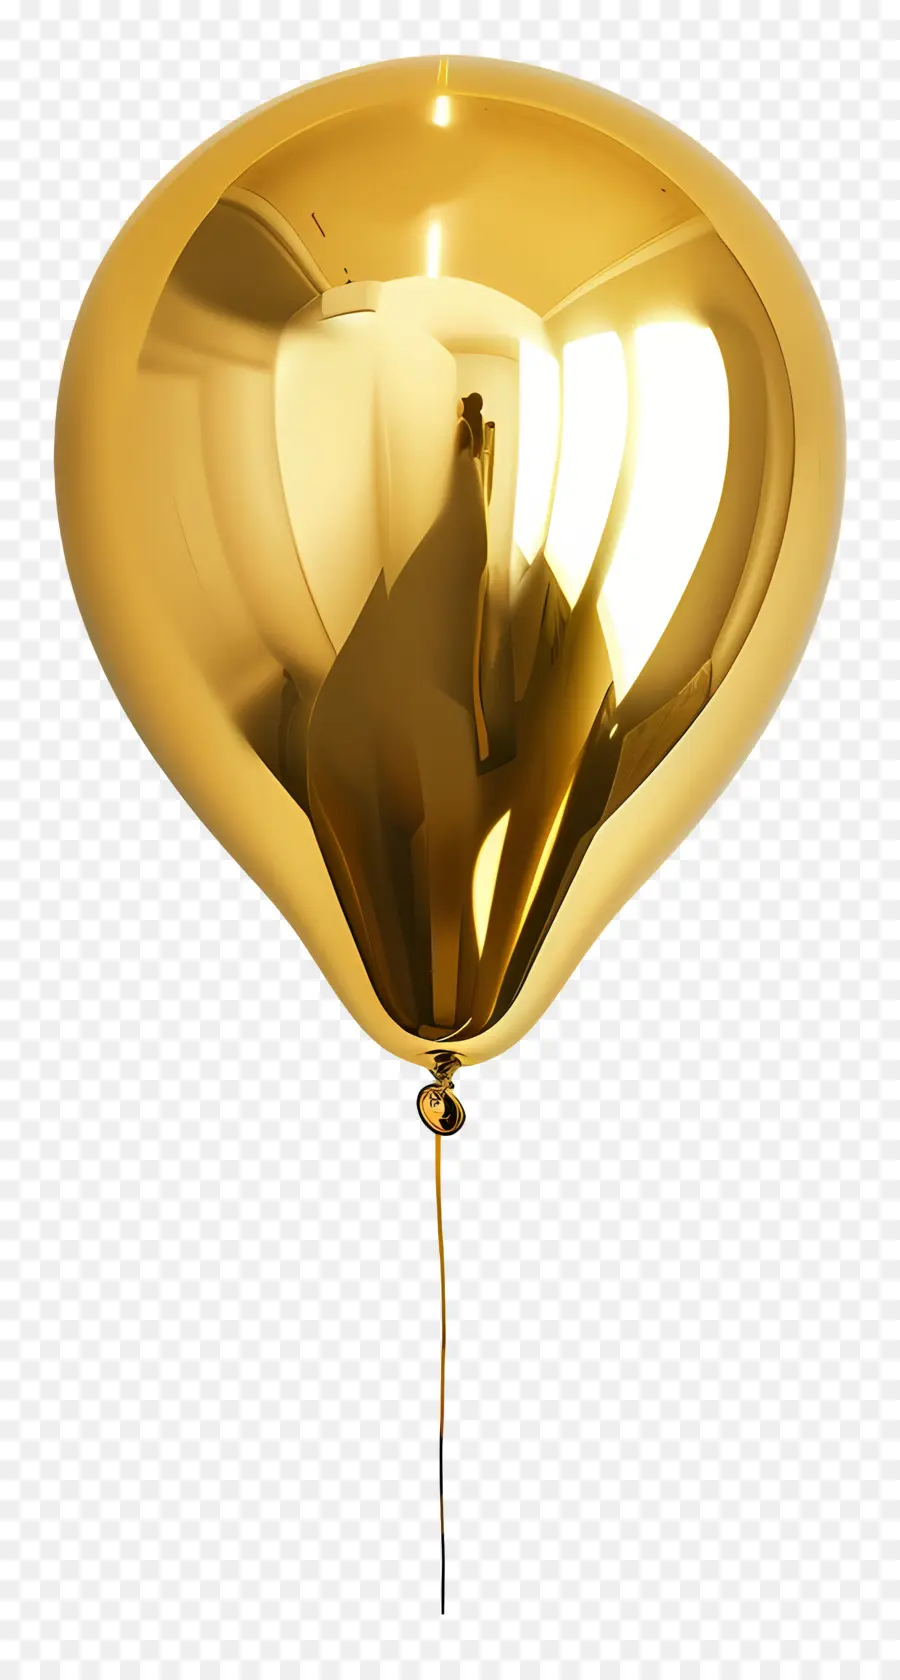 gold Ballon - Goldener Ballon schwebt im schwarzen Raum